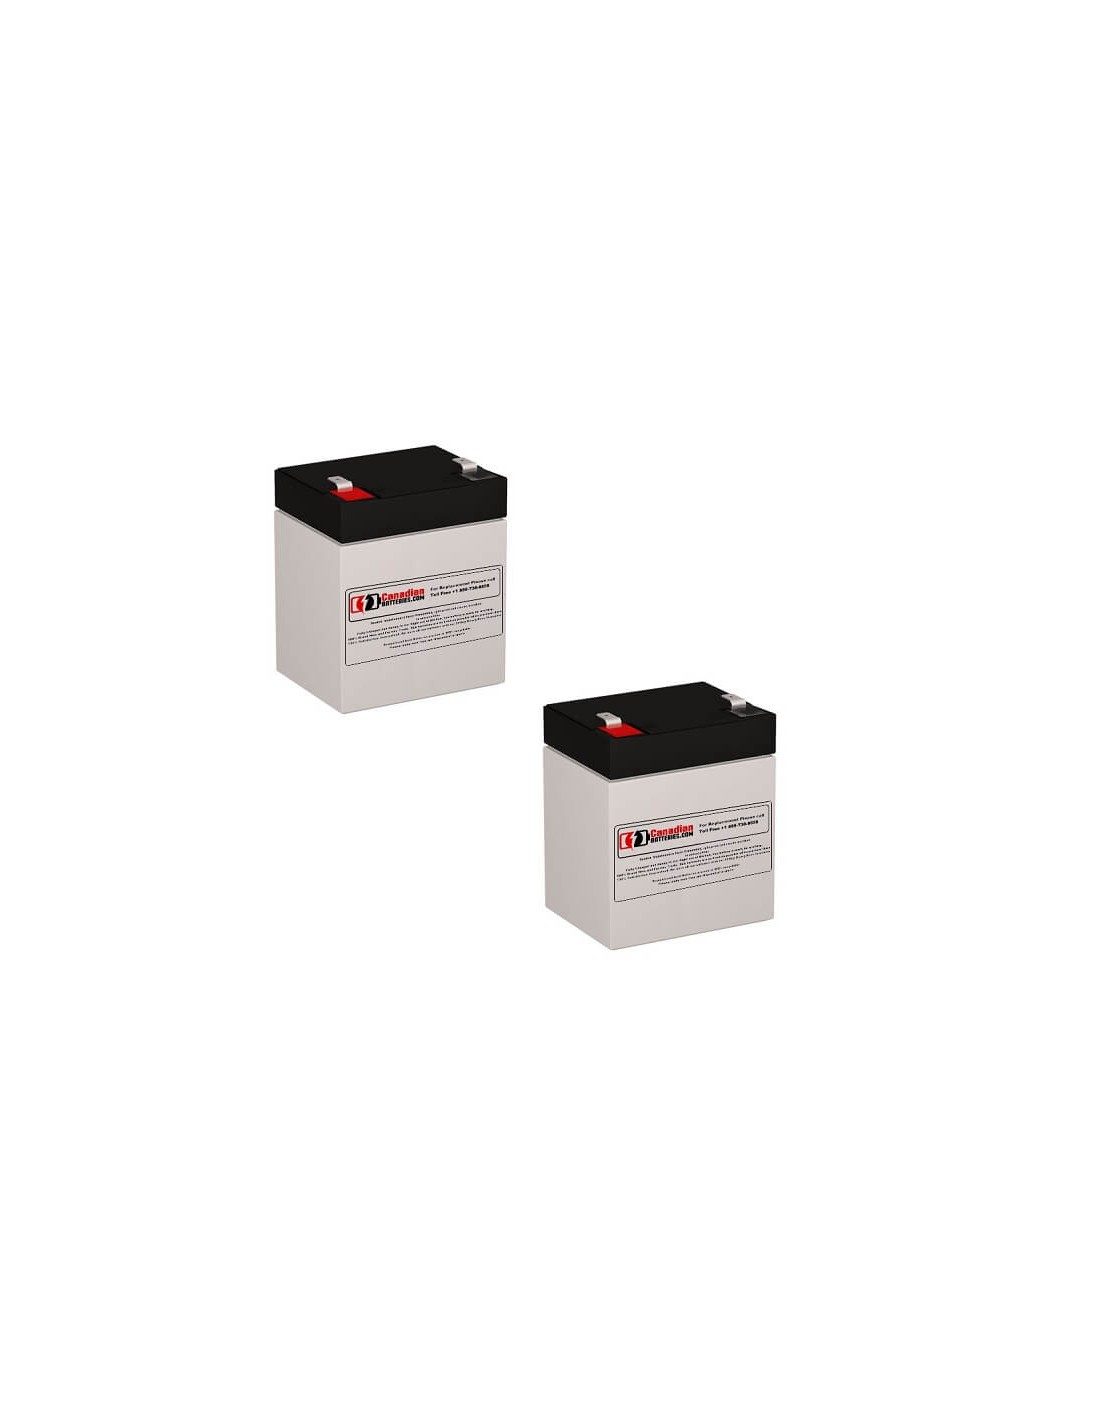 Batteries for Belkin F6c1100spunv UPS, 2 x 12V, 5Ah - 60Wh